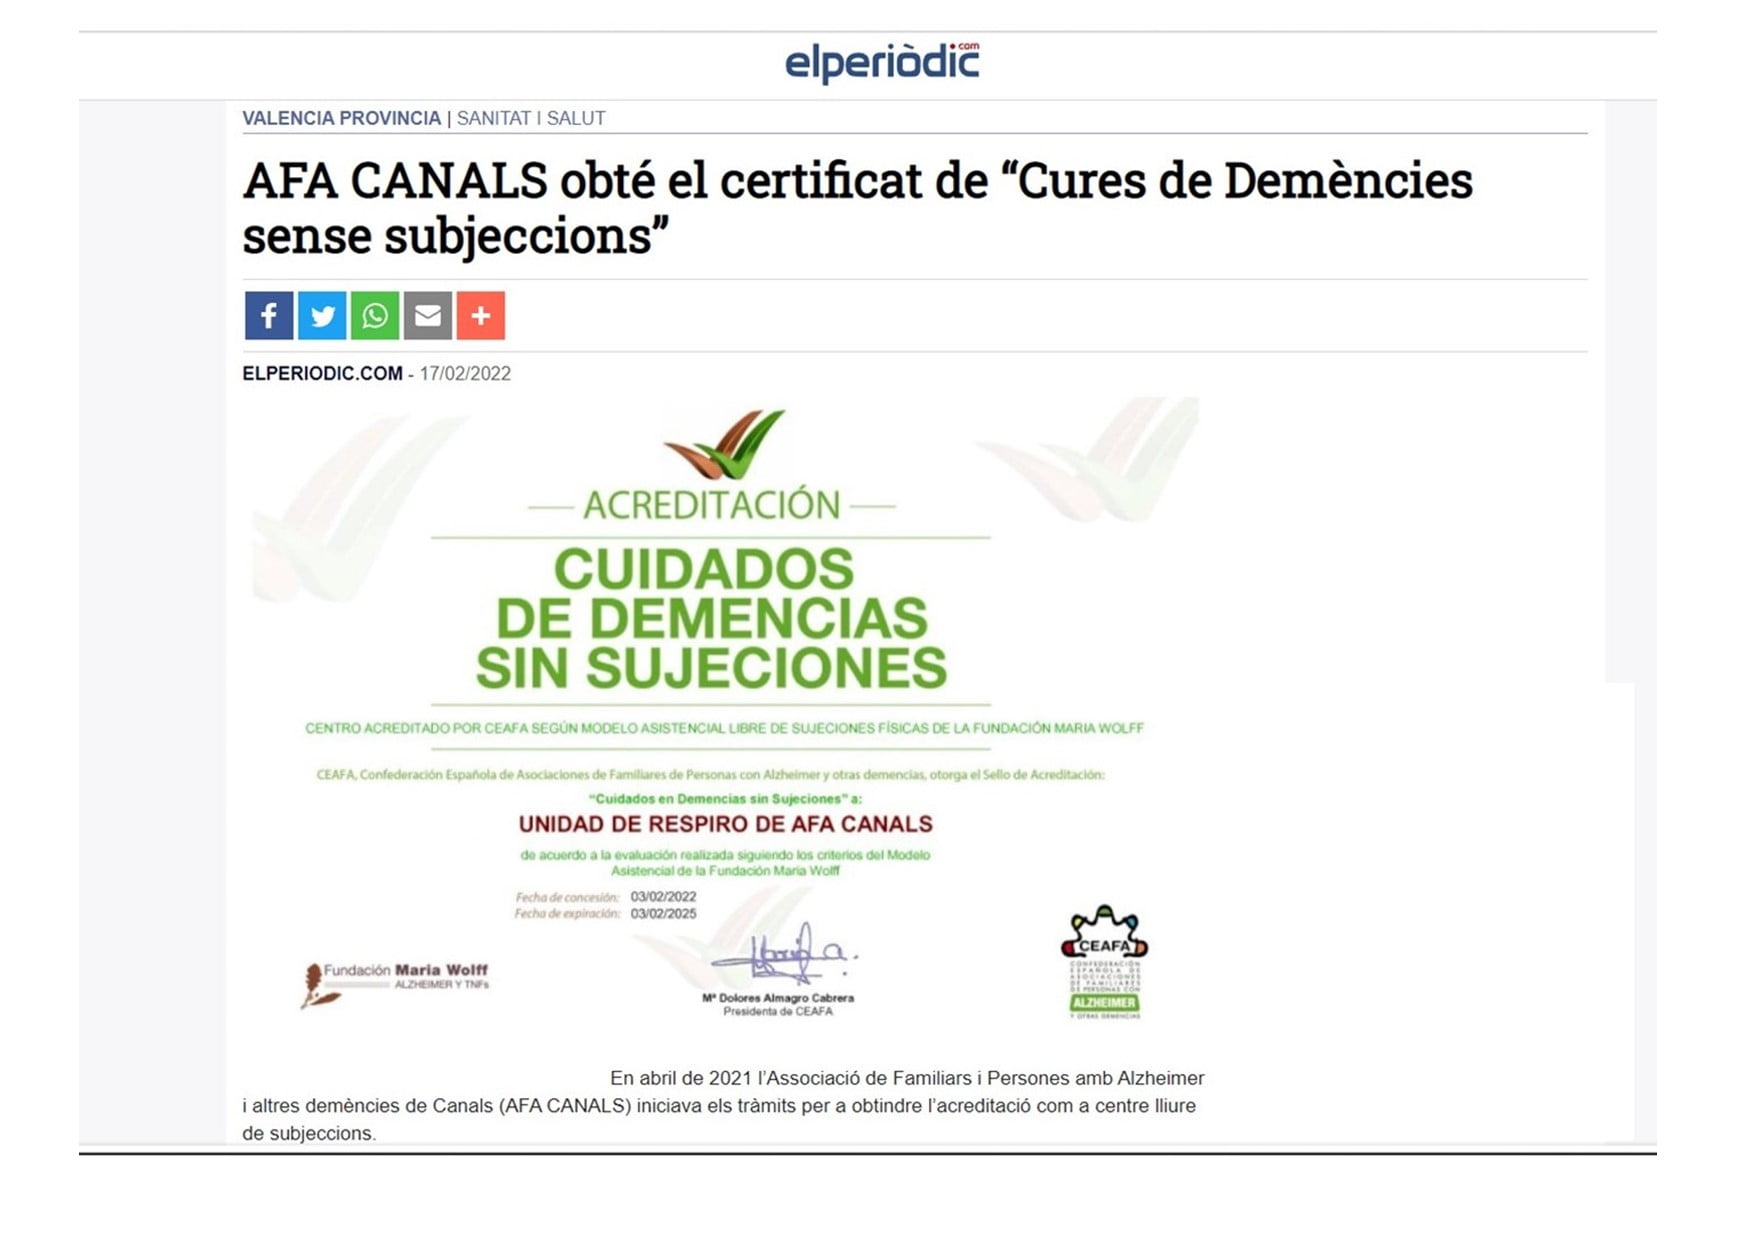 La prensa local valenciana se hace eco de la acreditación de AFA Canals como Centro Libre de Sujeciones según modelo FMW